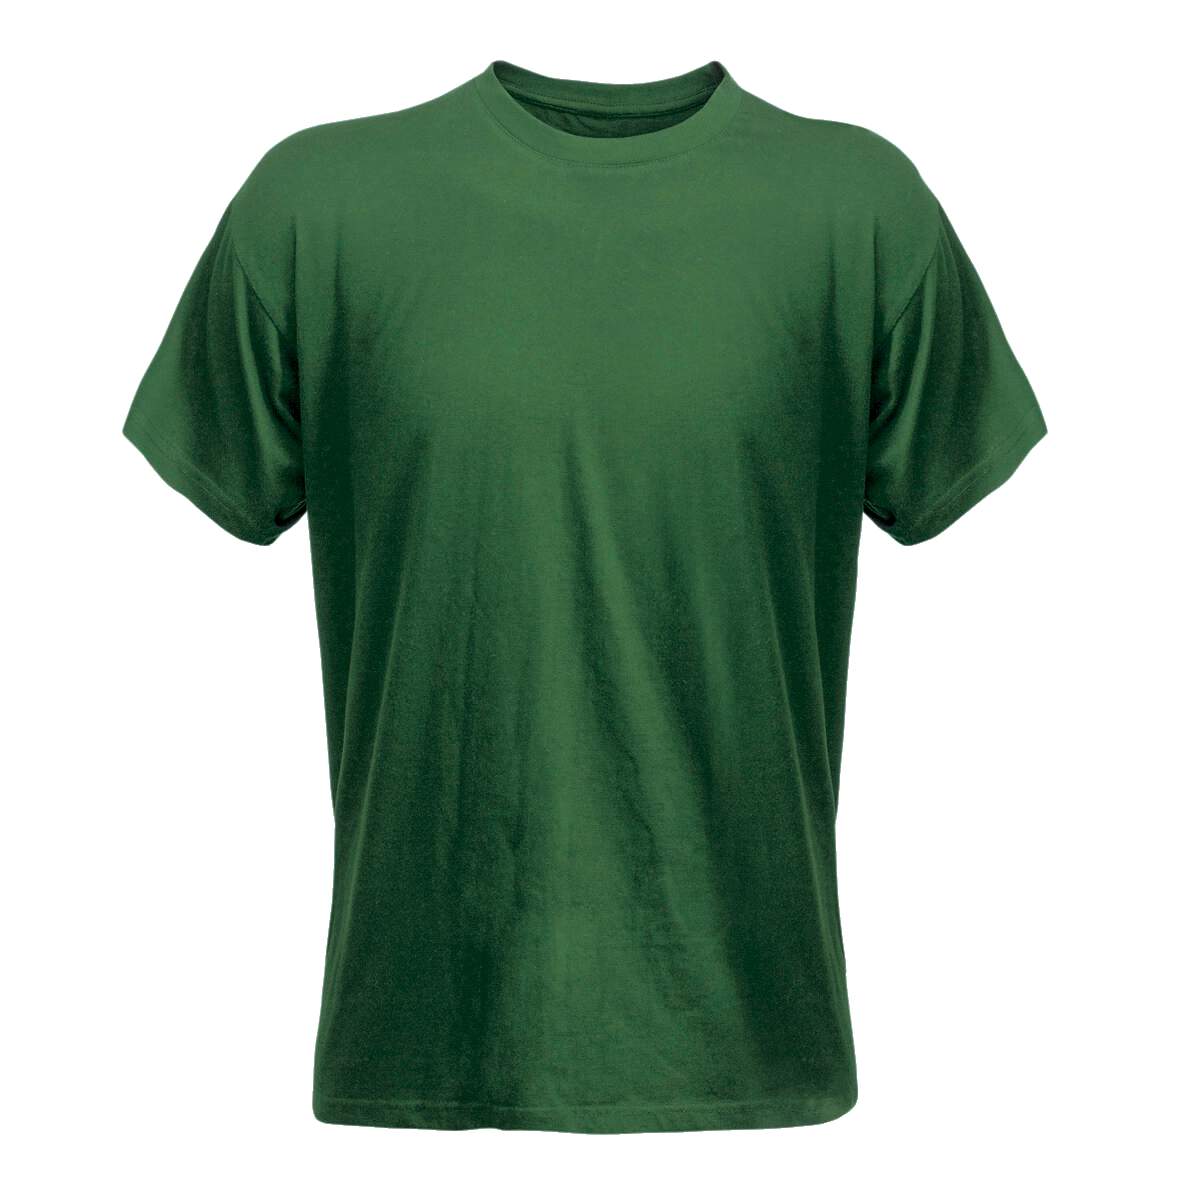 1138336 - T-Shirt grün Gr.S Code 1912